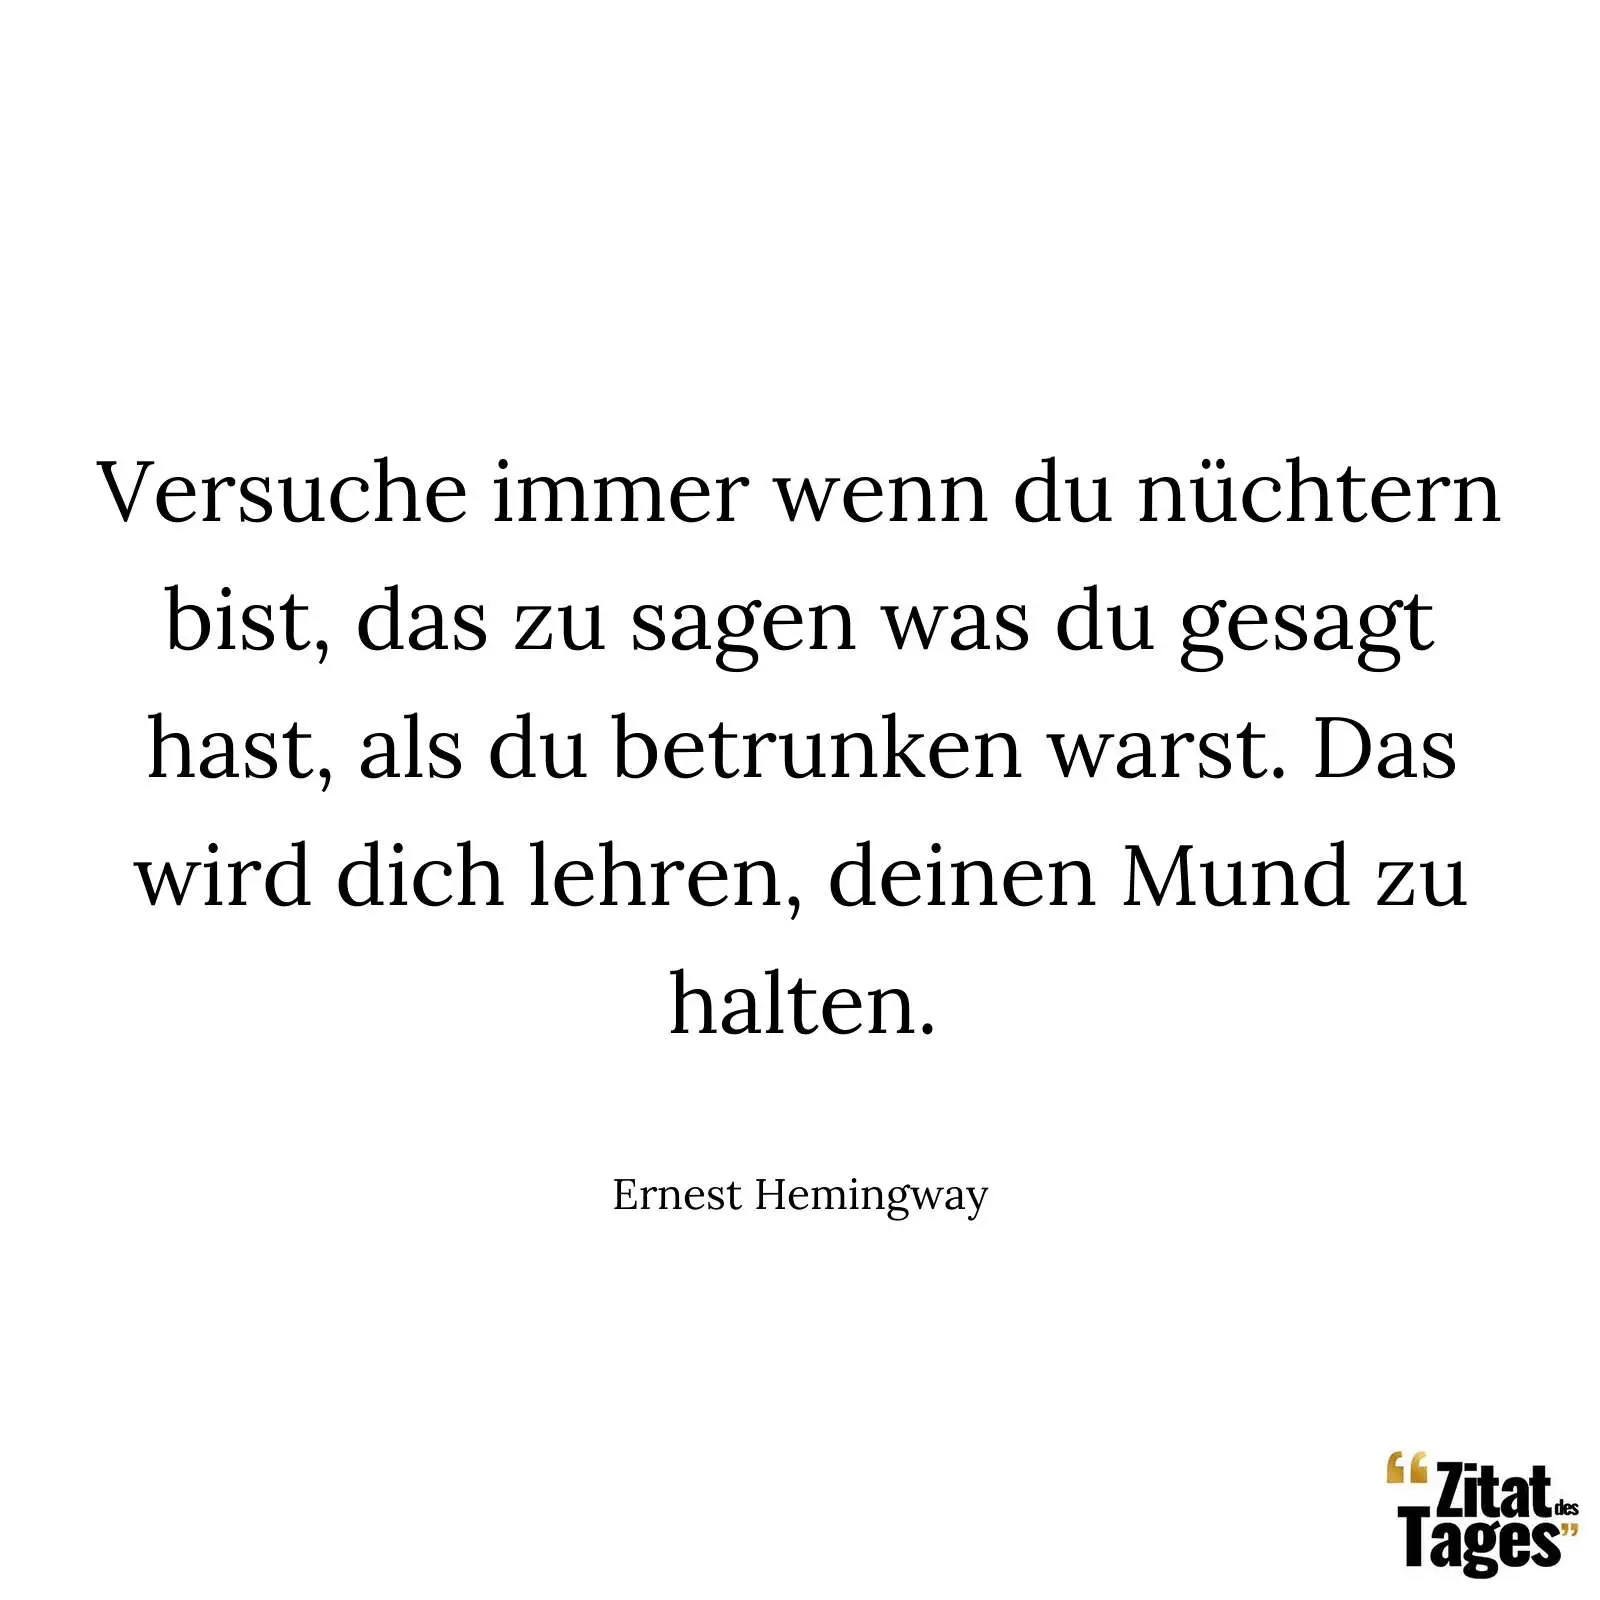 Versuche immer wenn du nüchtern bist, das zu sagen was du gesagt hast, als du betrunken warst. Das wird dich lehren, deinen Mund zu halten. - Ernest Hemingway